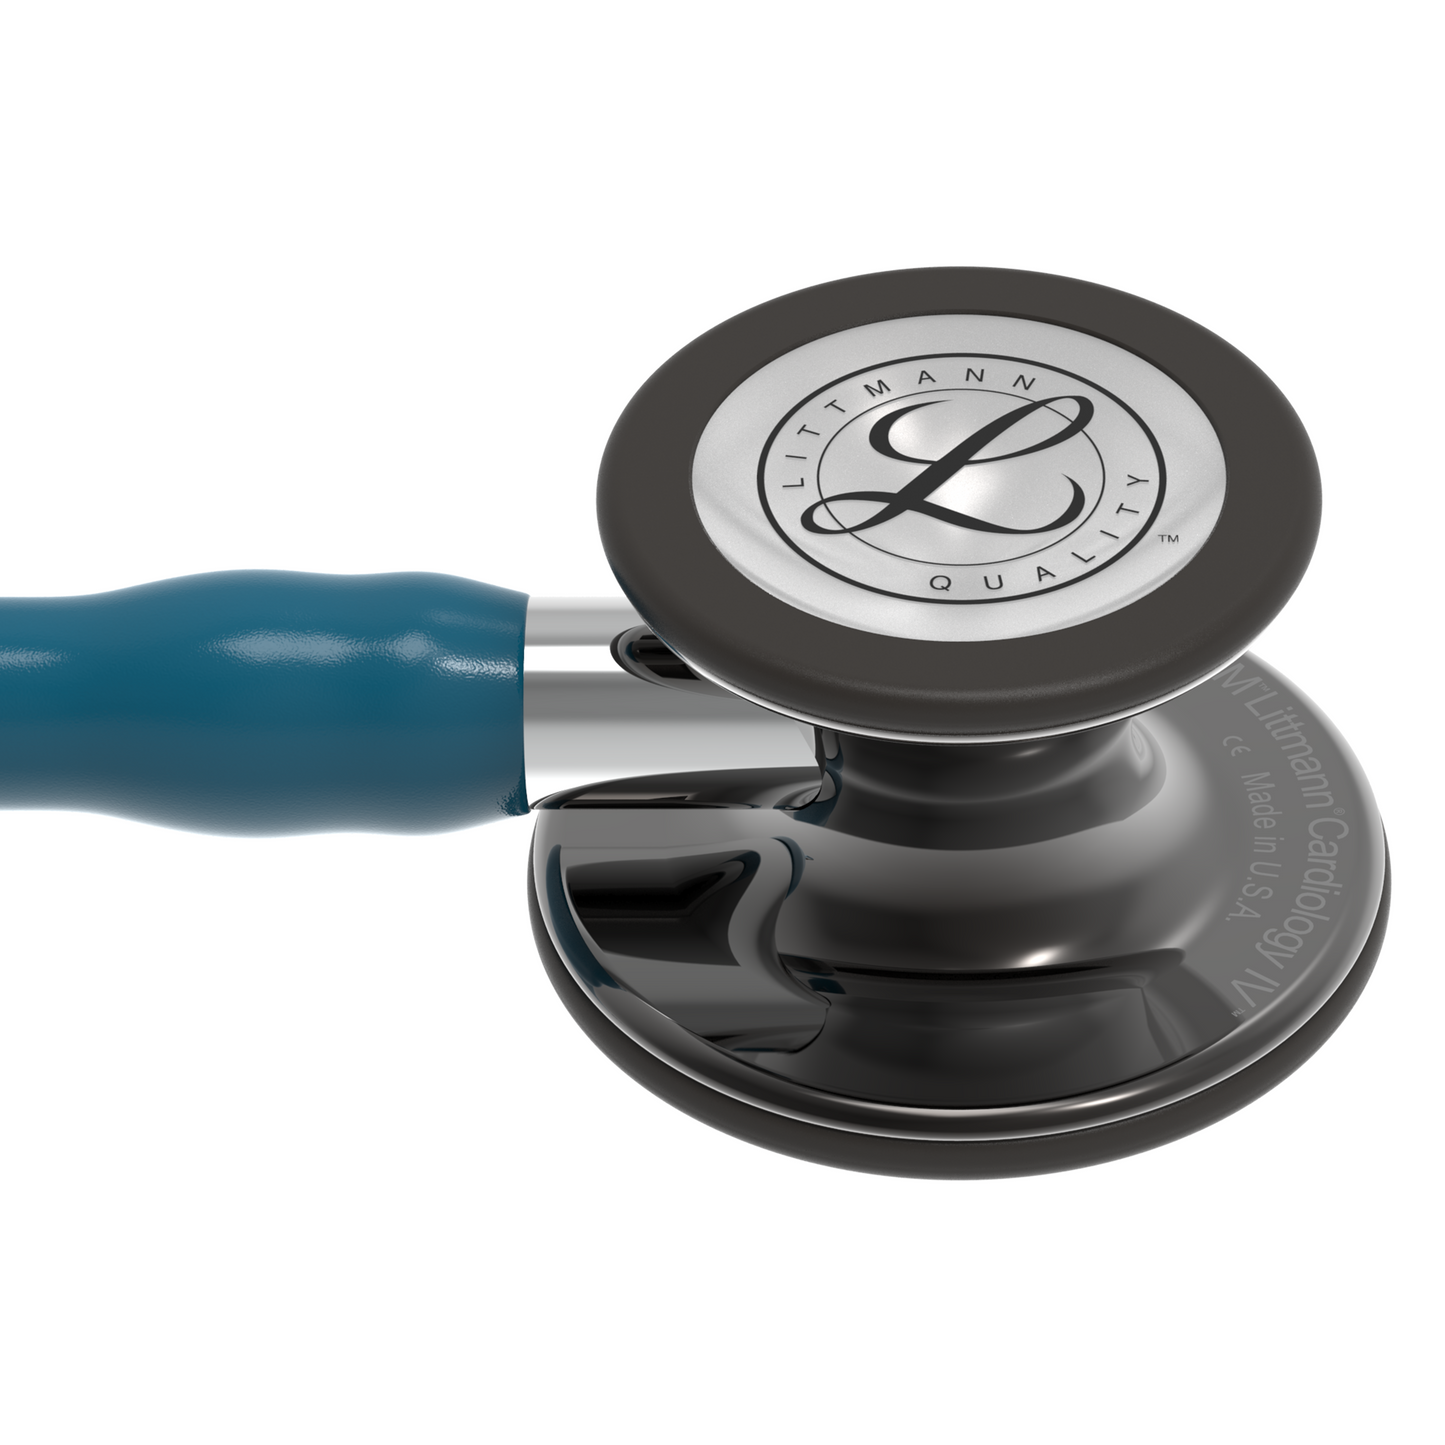 3M™ Littmann® Cardiology IV™, campana alto brillo gris humo, tubo azul Caribe, vástago espejo y auricular color gris humo 6234